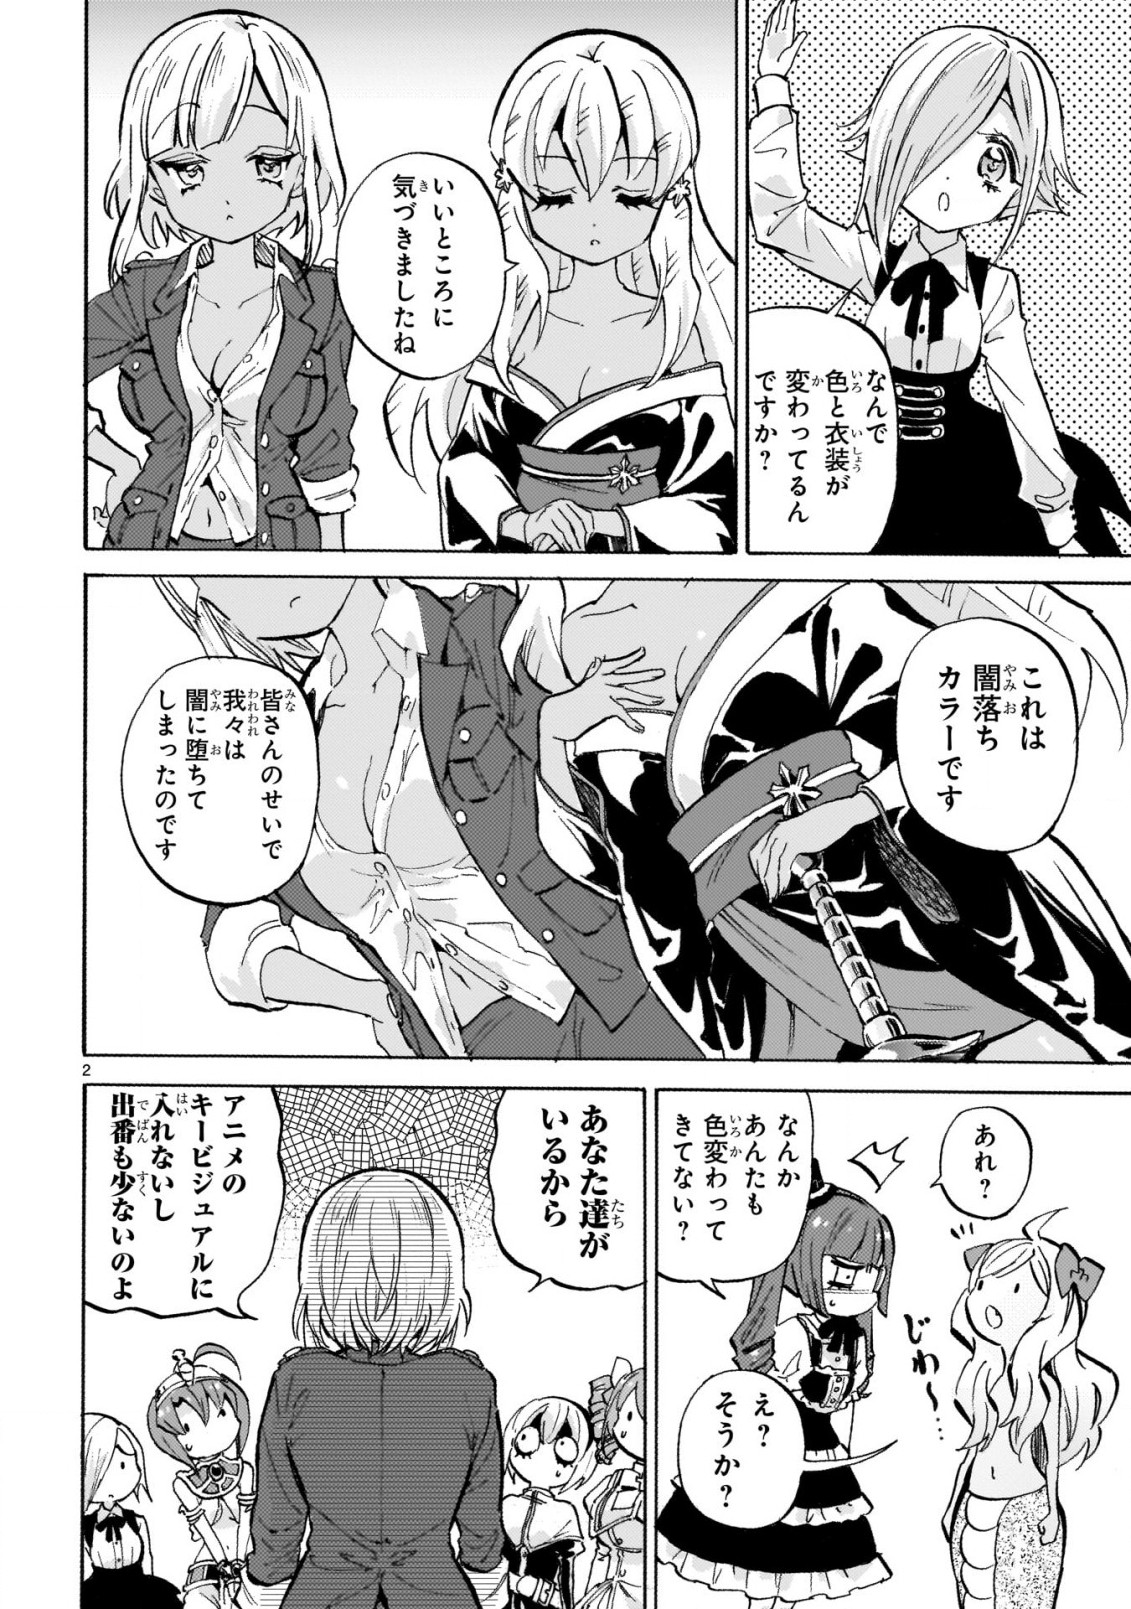 Jashin-chan Dropkick - Chapter 234 - Page 2